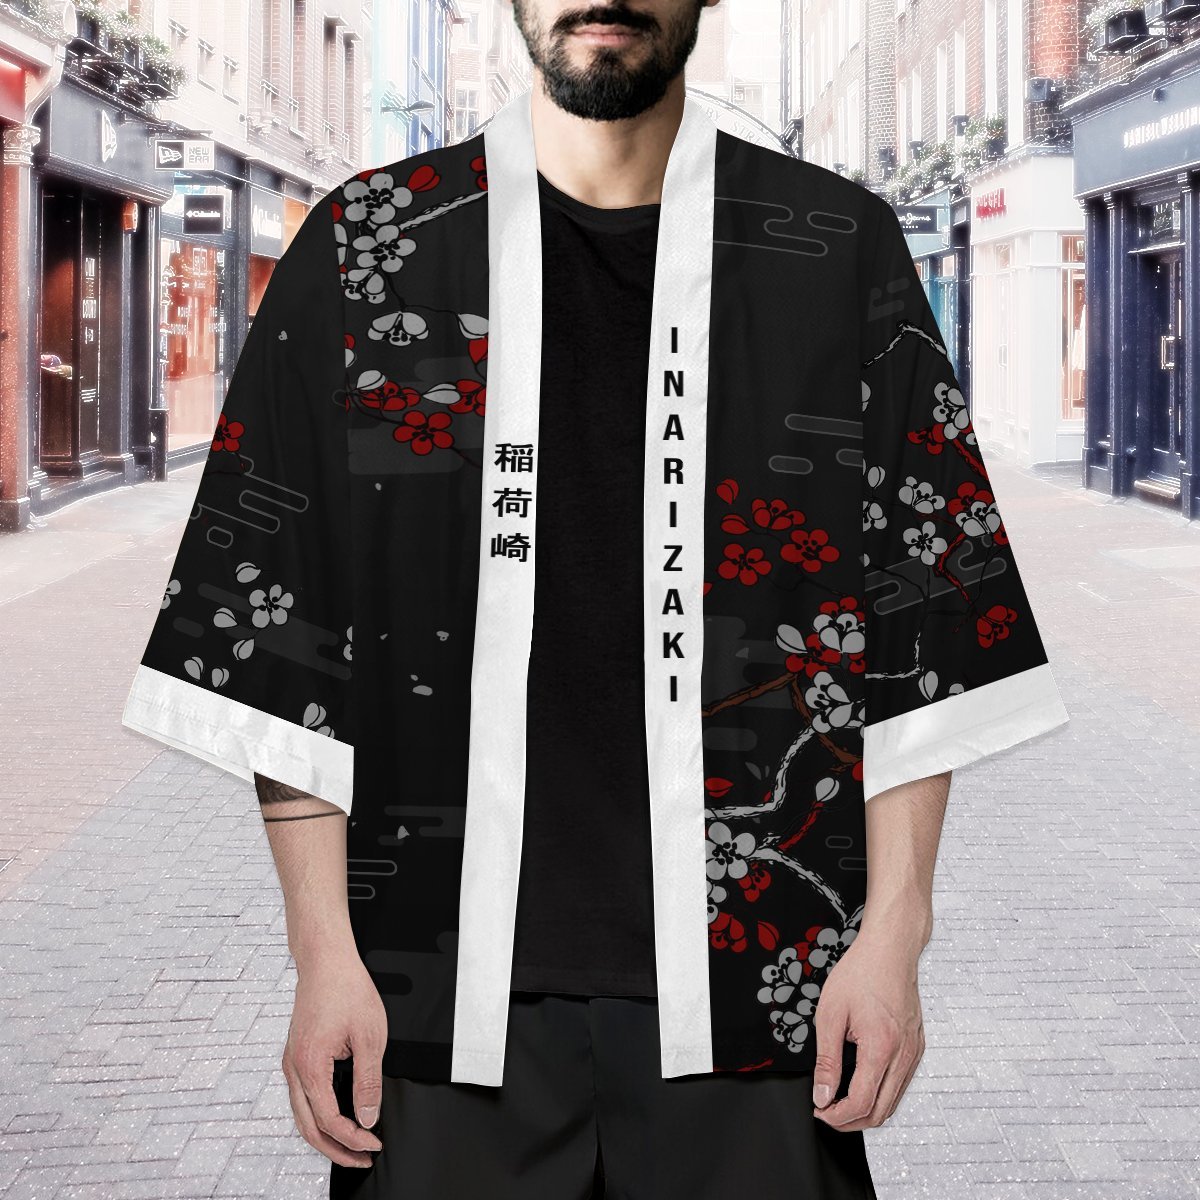 inarizaki foxes kimono 186278 - Otaku Treat